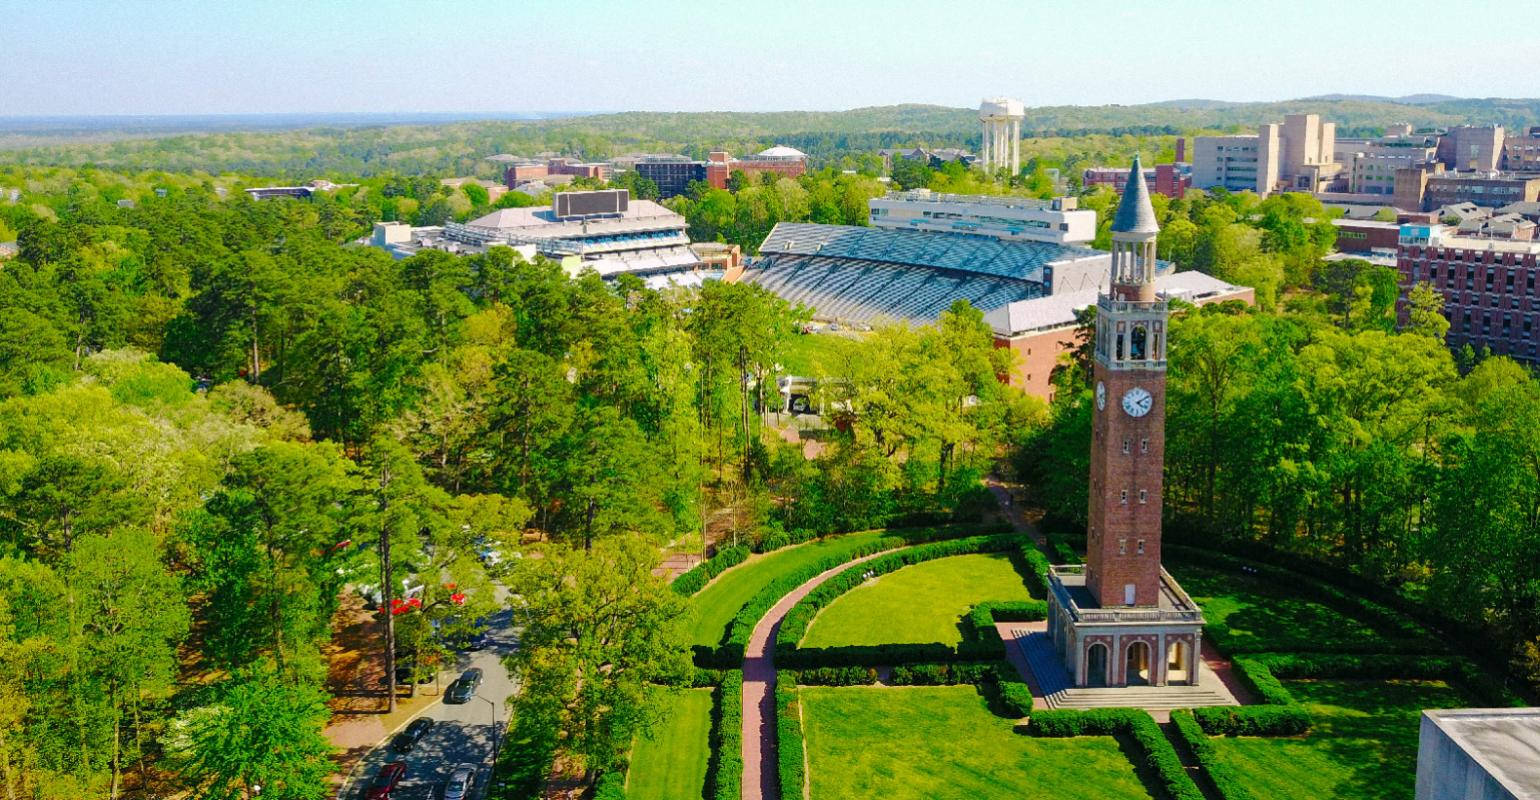 University Of North Carolina Background